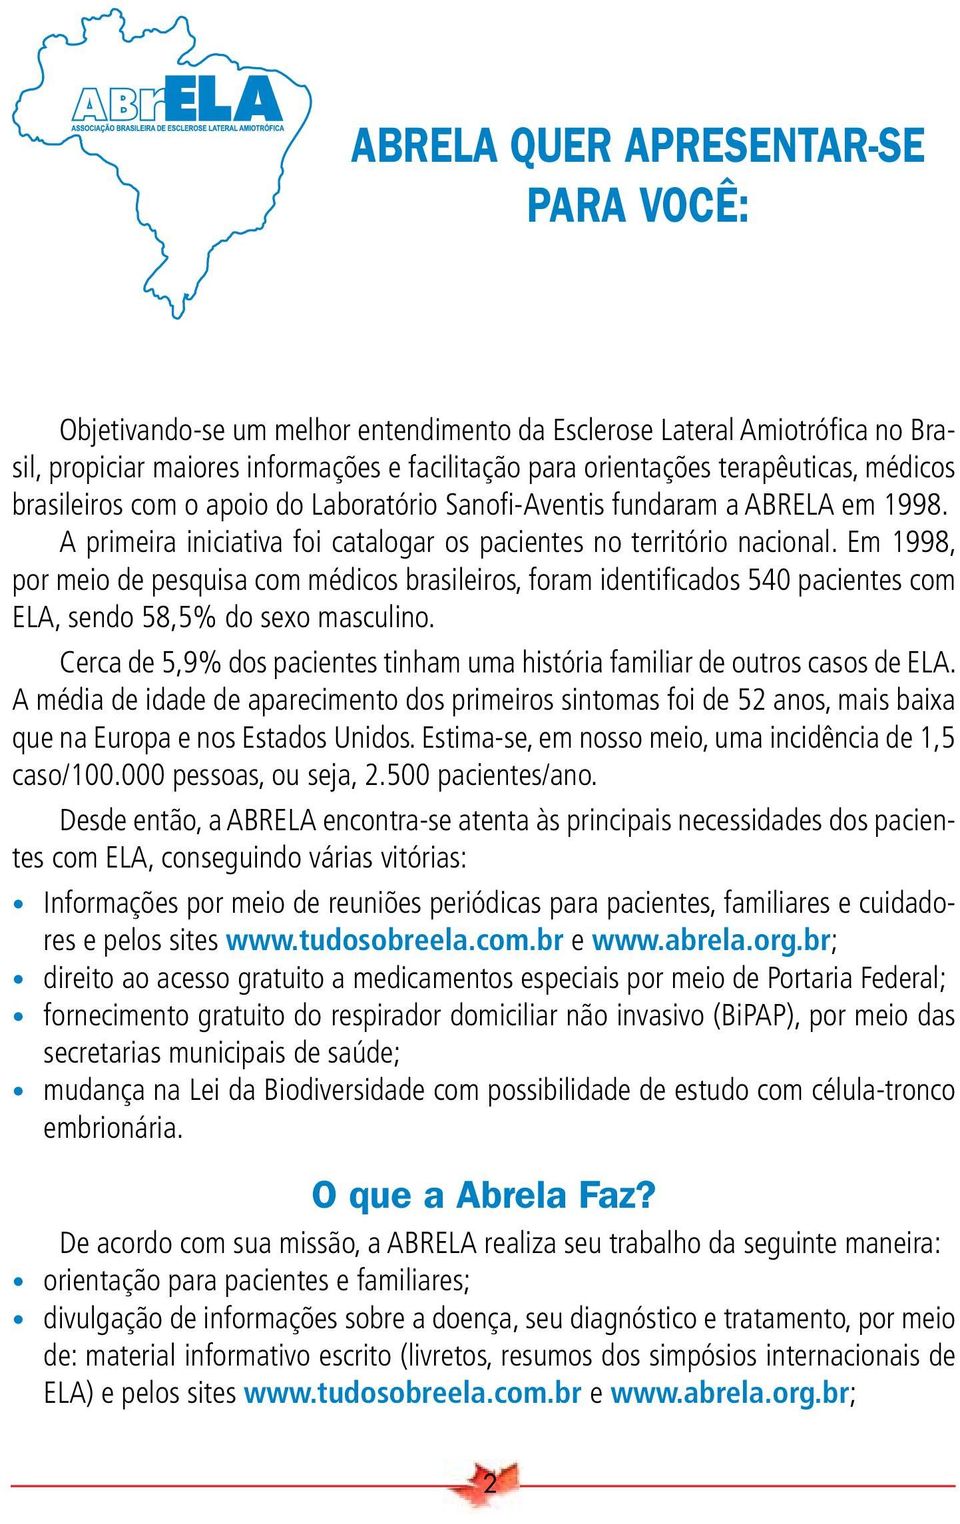 Em 1998, por meio de pesquisa com médicos brasileiros, foram identifi cados 540 pacientes com ELA, sendo 58,5% do sexo masculino.